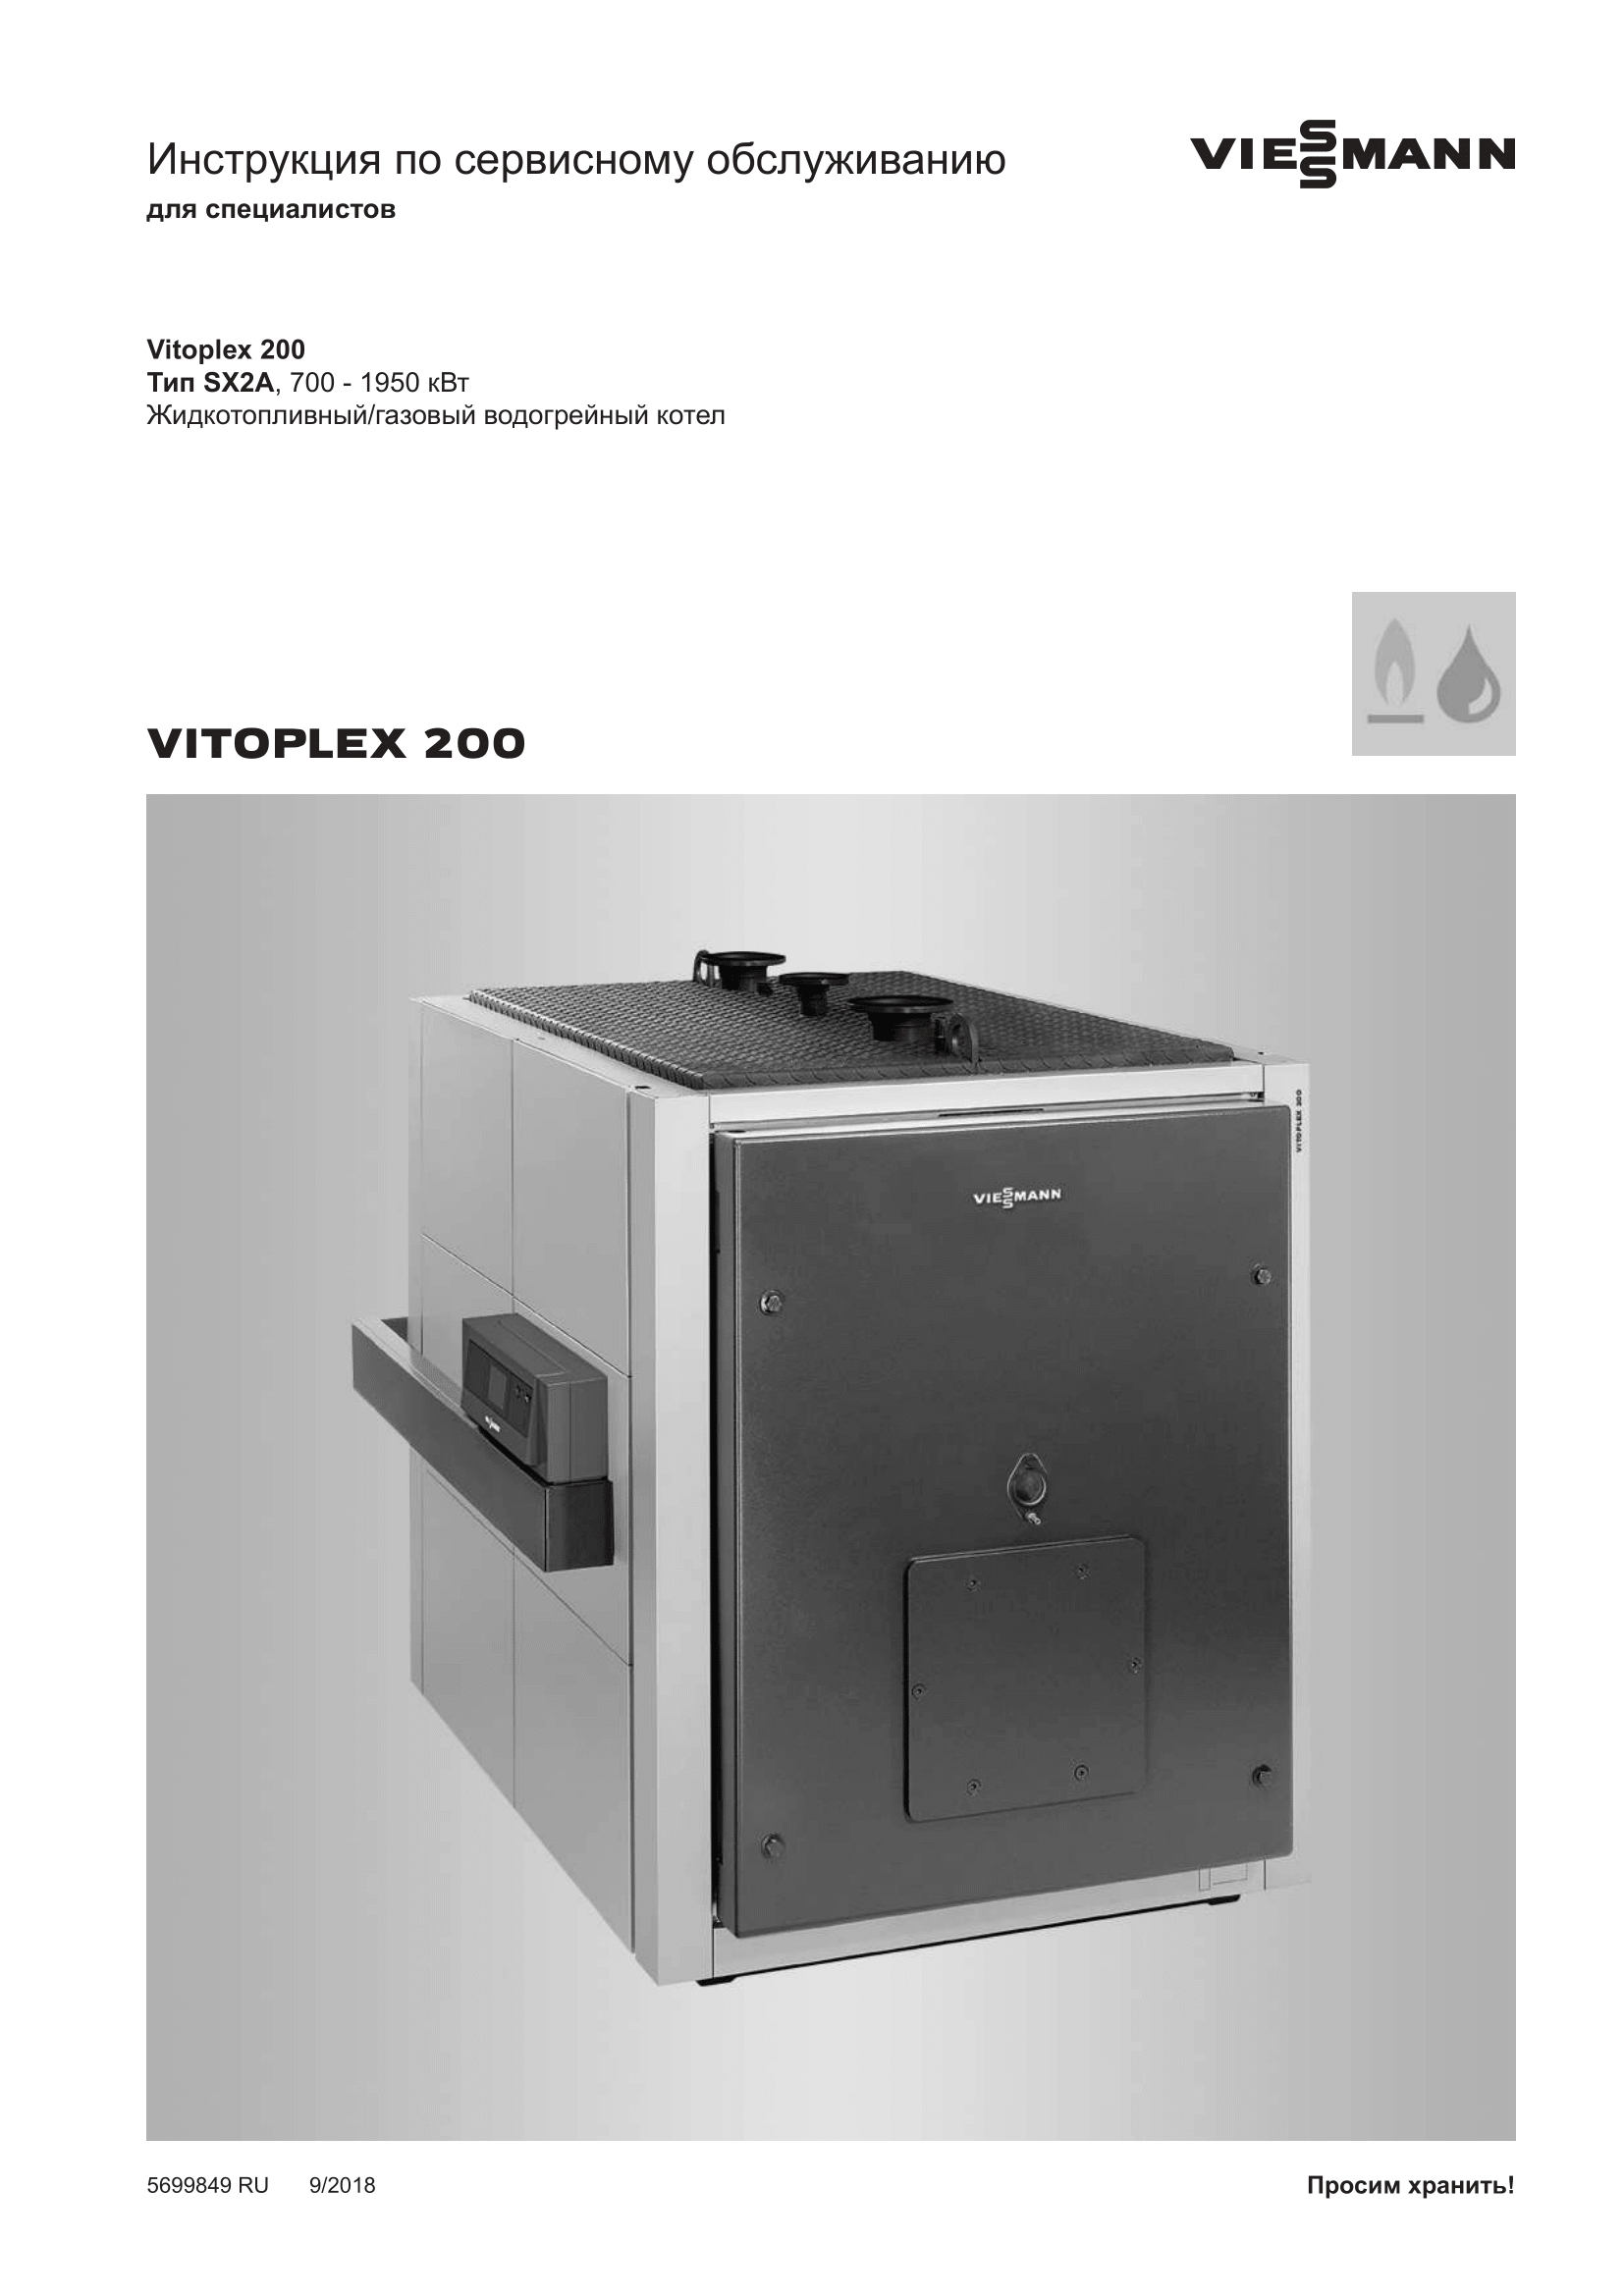 Фотография Инструкция по сервисному обслуживанию для комбинированного котла (дизель/газ) Vitoplex 200 мощностью от 700 до 1950 КВт